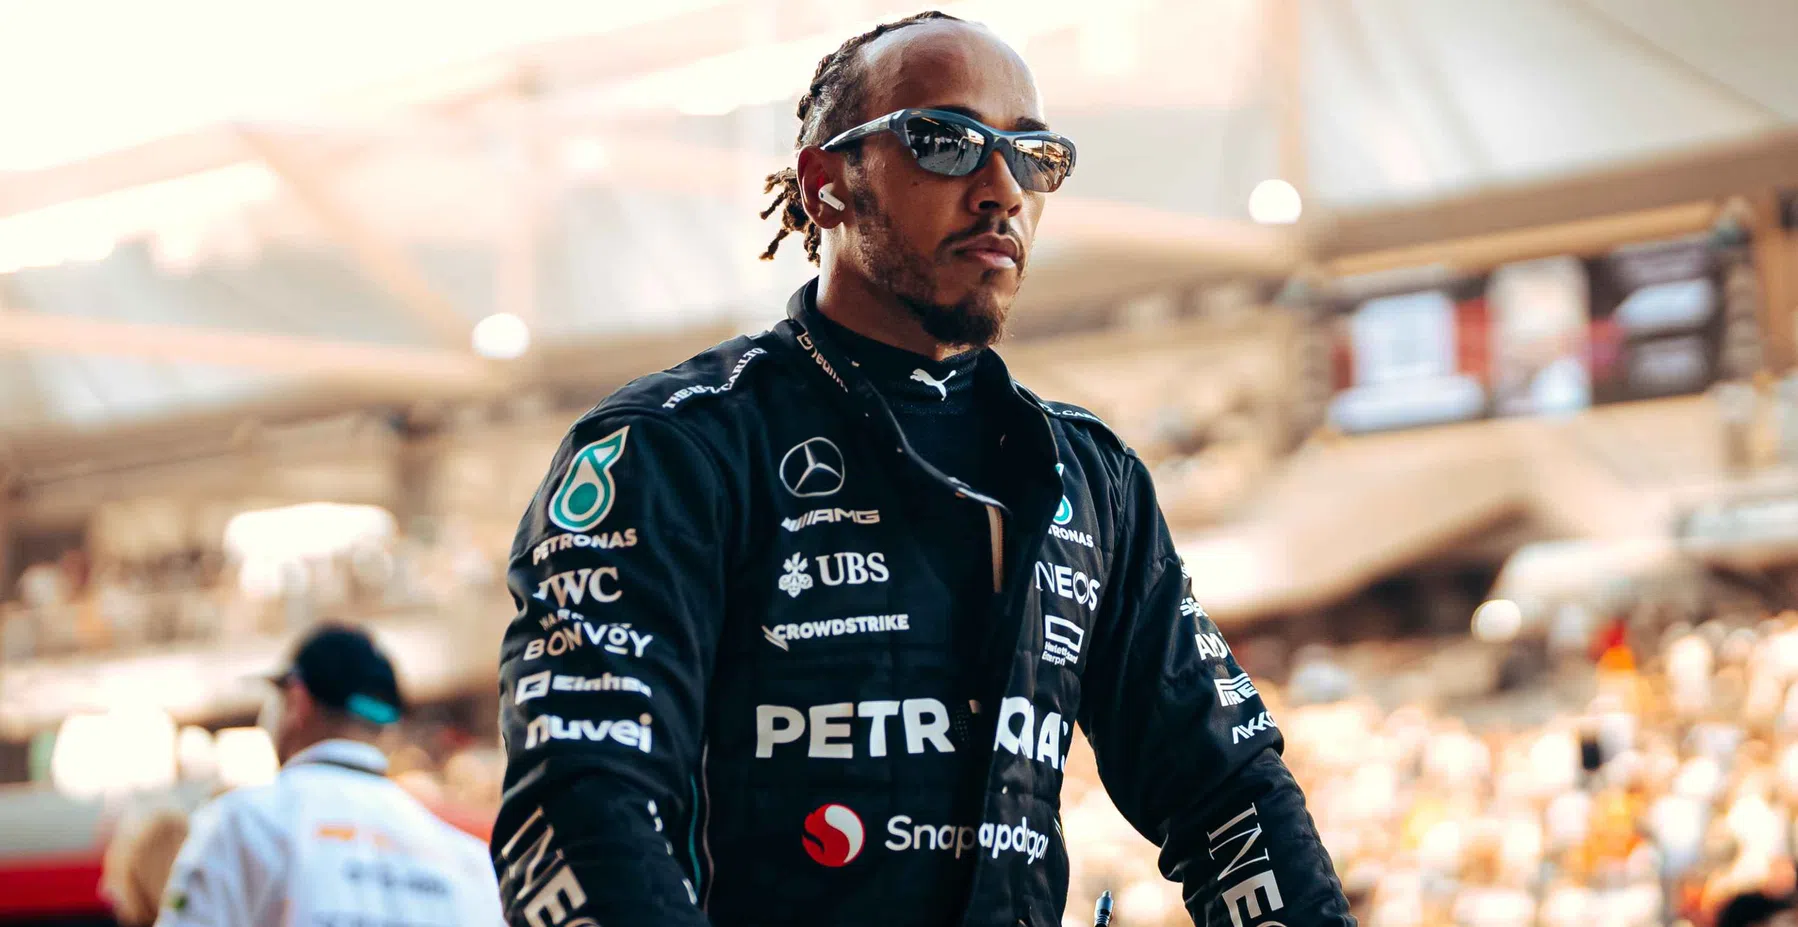 'Lewis Hamilton' betrokken bij poging tot oplichting